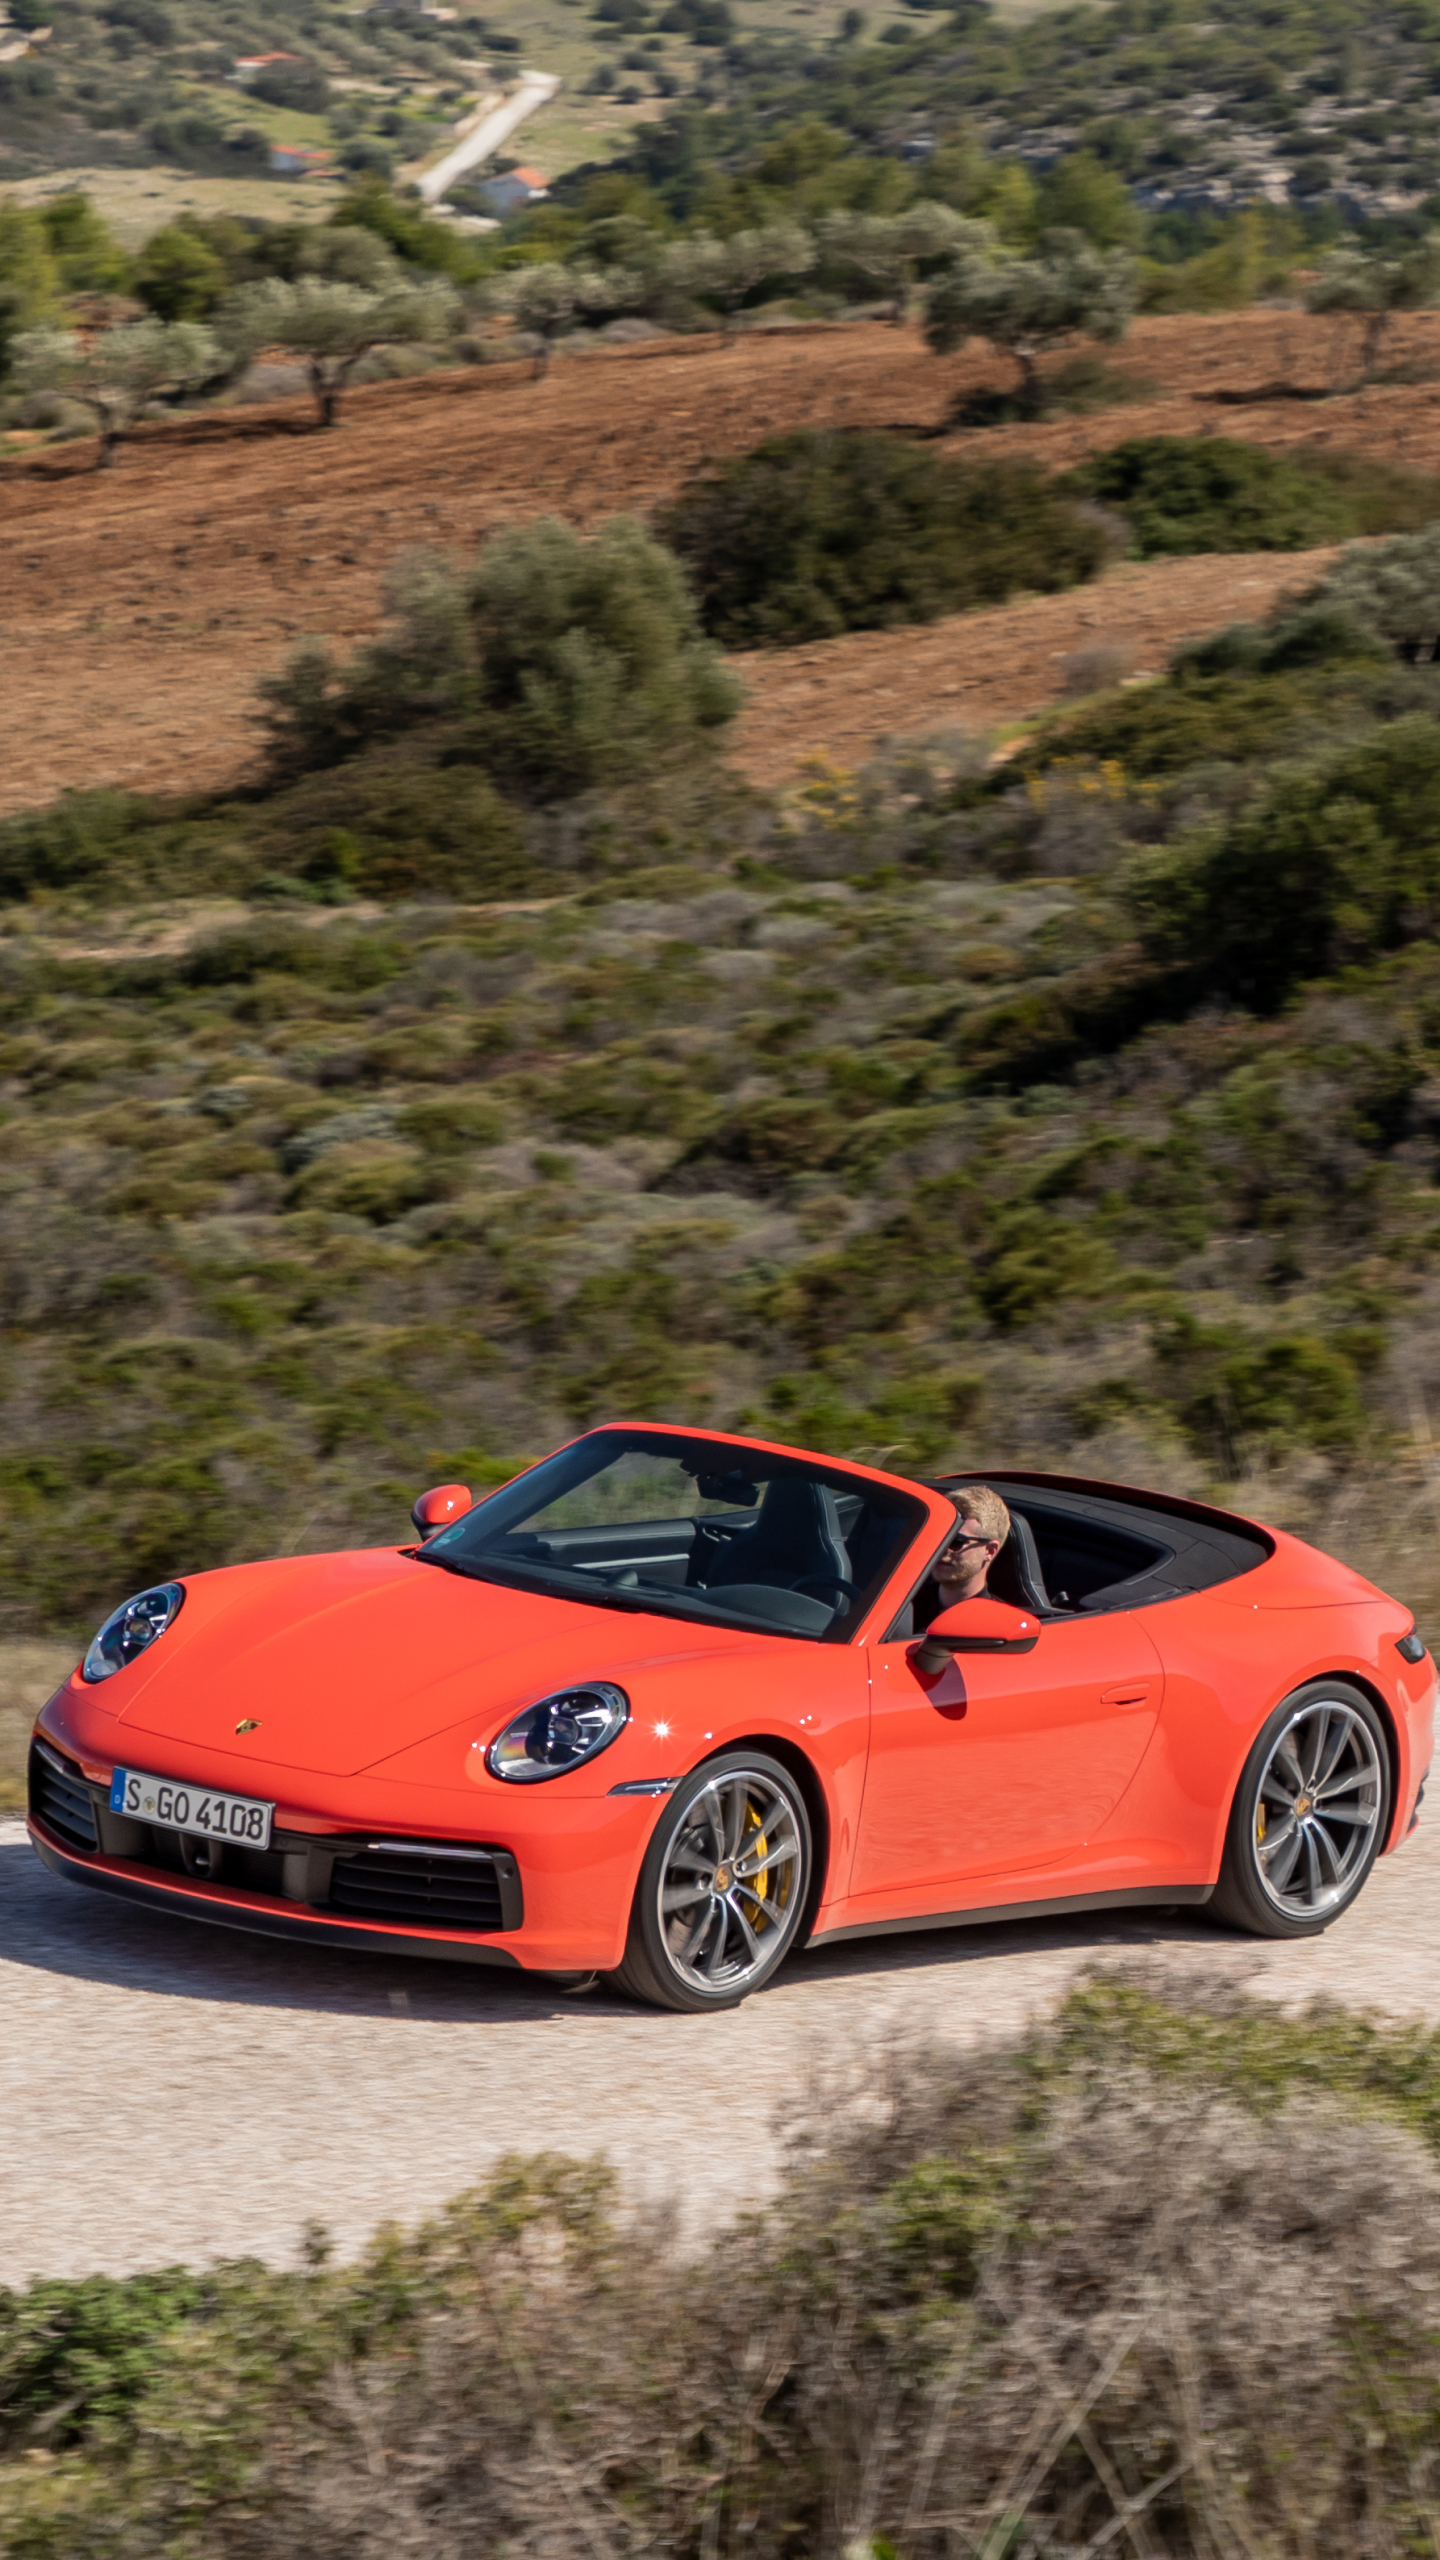 Descarga gratuita de fondo de pantalla para móvil de Porsche, Coche, Porsche 911, Vehículo, Vehículos, Porsche 911 Carrera, Coche Naranja.